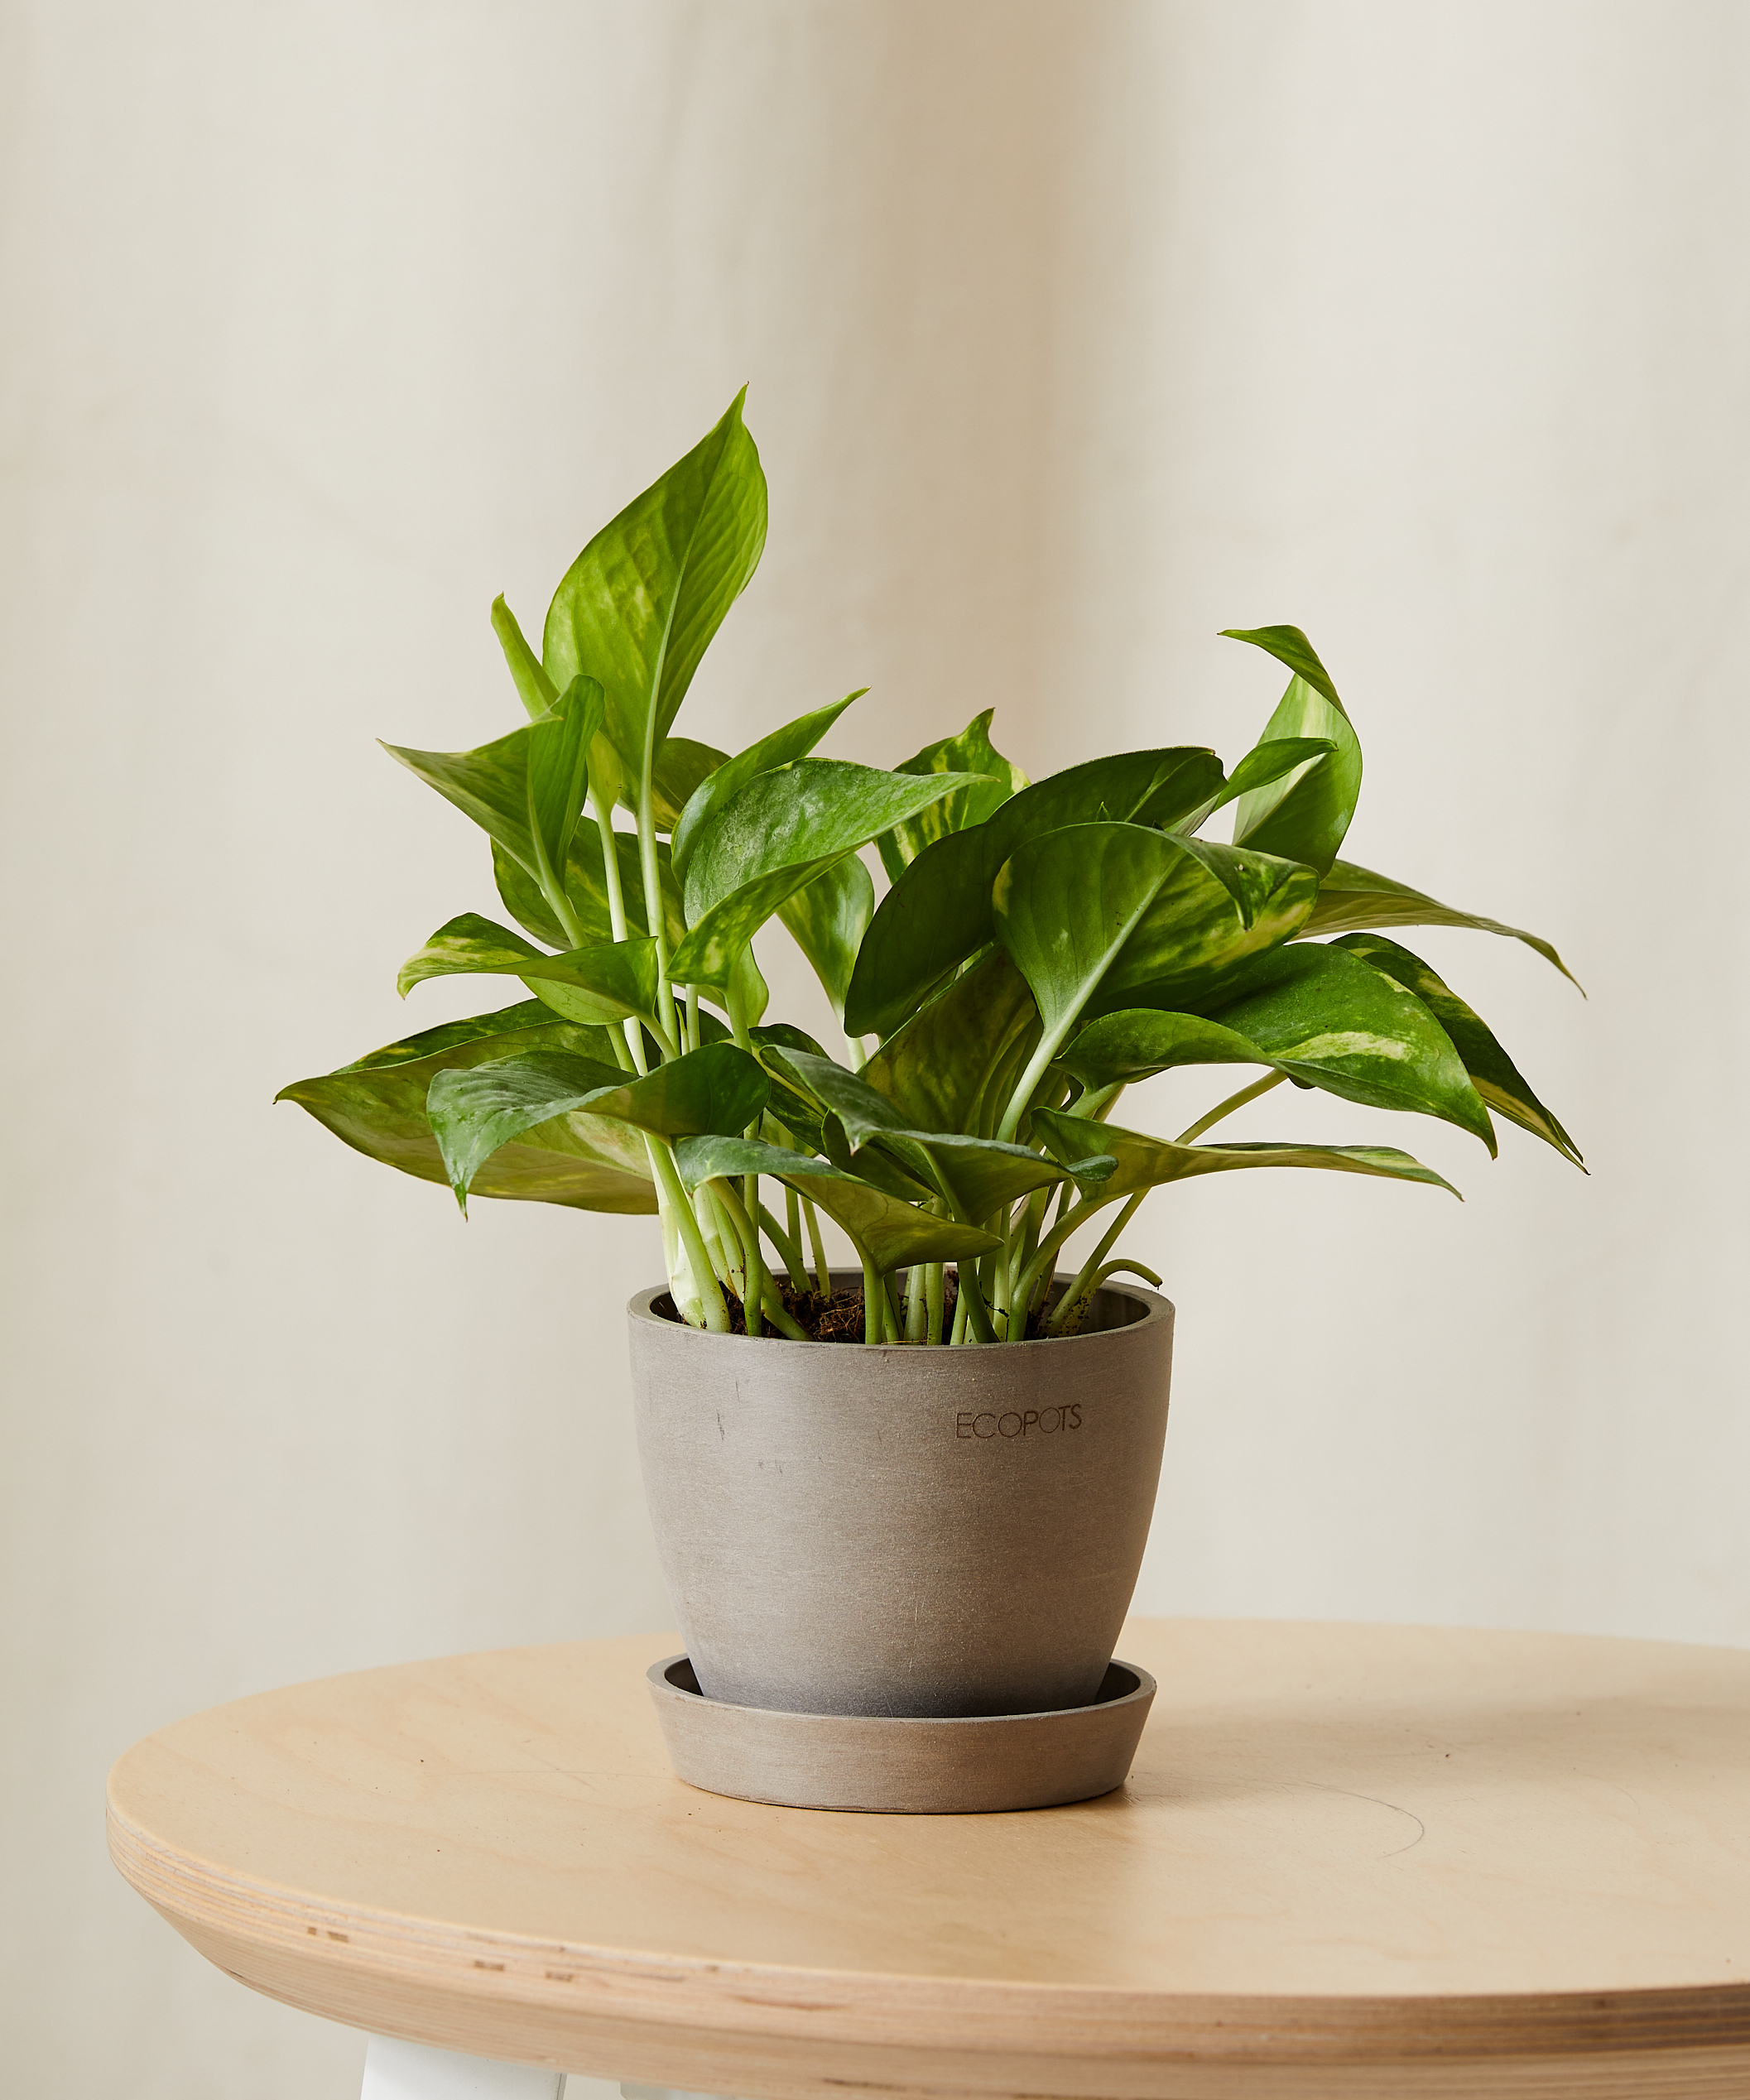 8" Pothos Plant XS | Bloomscape® | Pothos Golden | Hanging Plants Indoor | Low Light Plants | Devil's Ivy, Taro Vine, Devil's Vine | Epipremnum Aureum